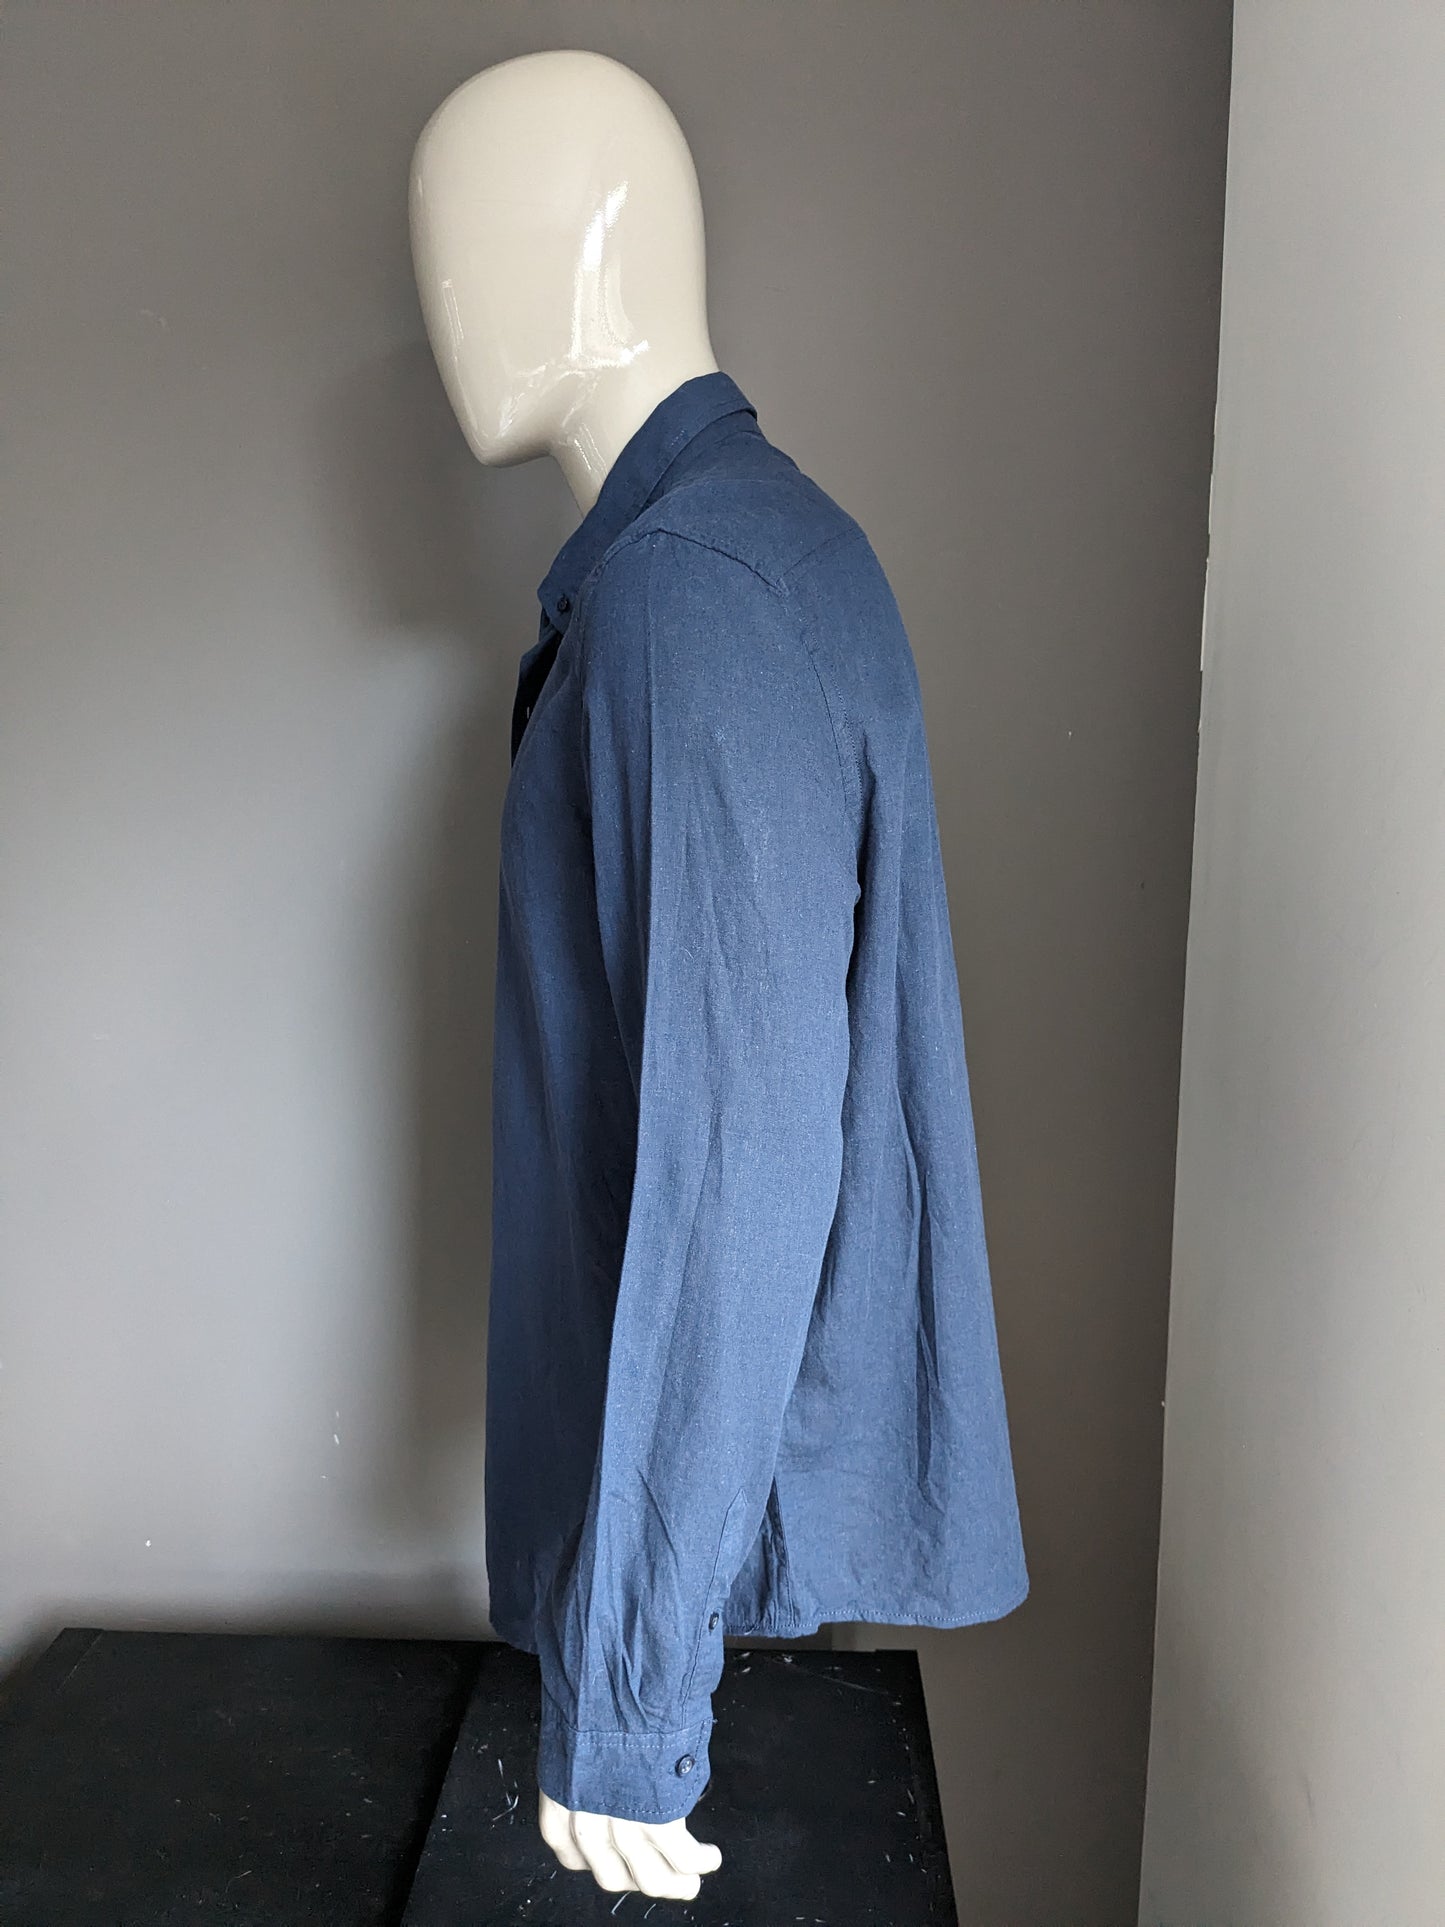 Blue linen shirt. Dark blue colored. Size 2XL / XXL. 55% linen.